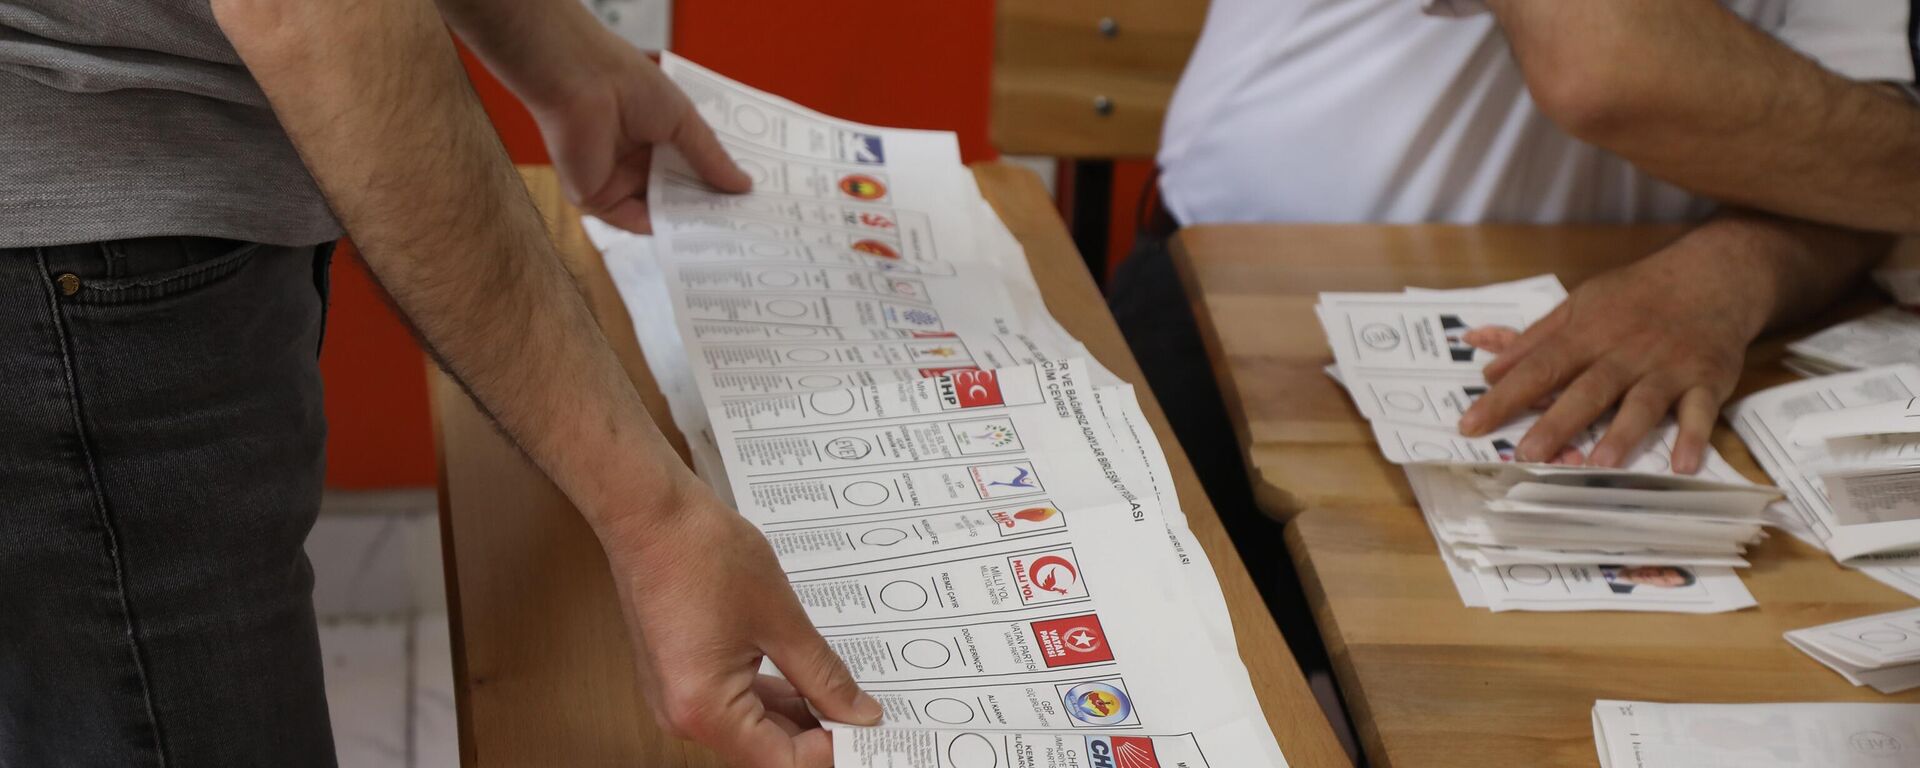 Пребројавање гласова на председничким и парламентарним изборима у Турској - Sputnik Србија, 1920, 15.05.2023